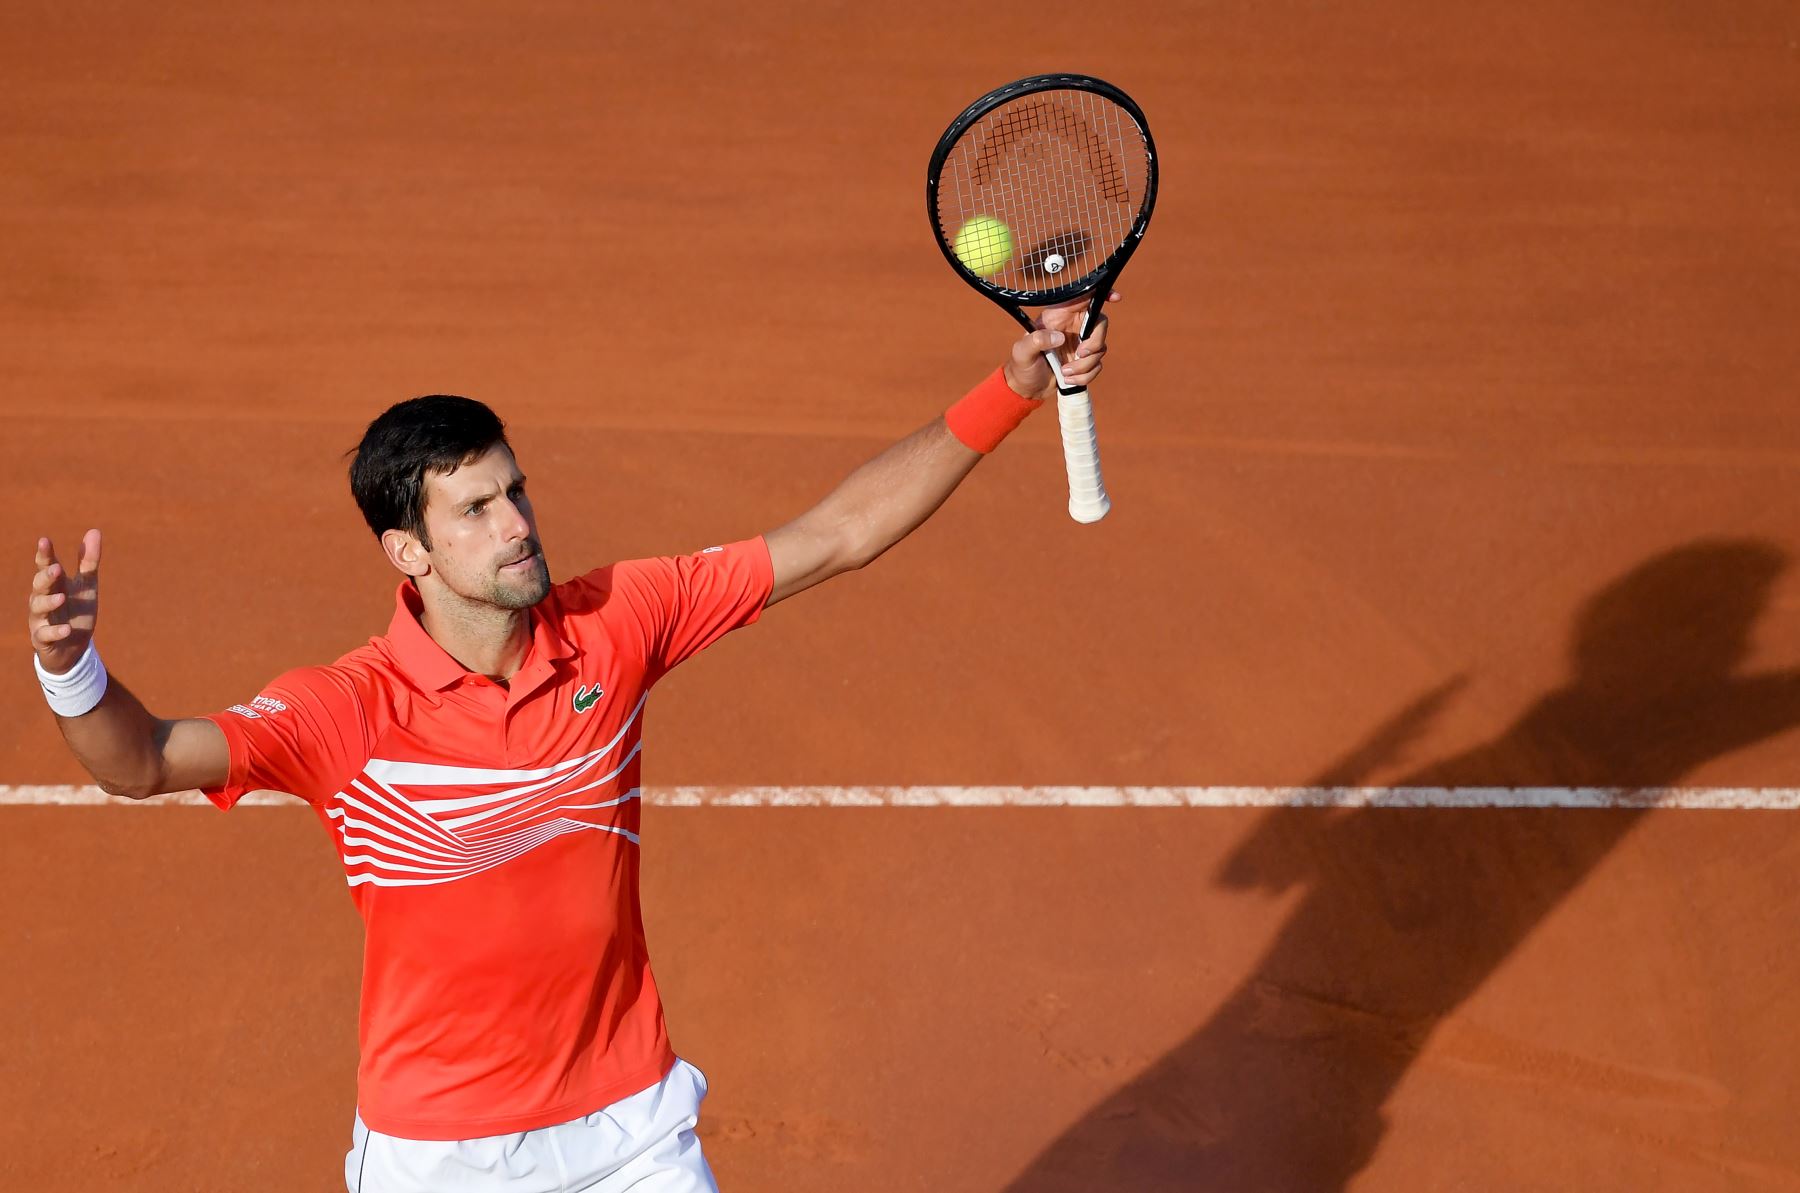 Novak Djokovic de Serbia reacciona después de ganar un punto contra Rafael Nadal de España durante su último partido de tenis del torneo ATP Masters en el Foro Italico en Roma .
Foto:AFP